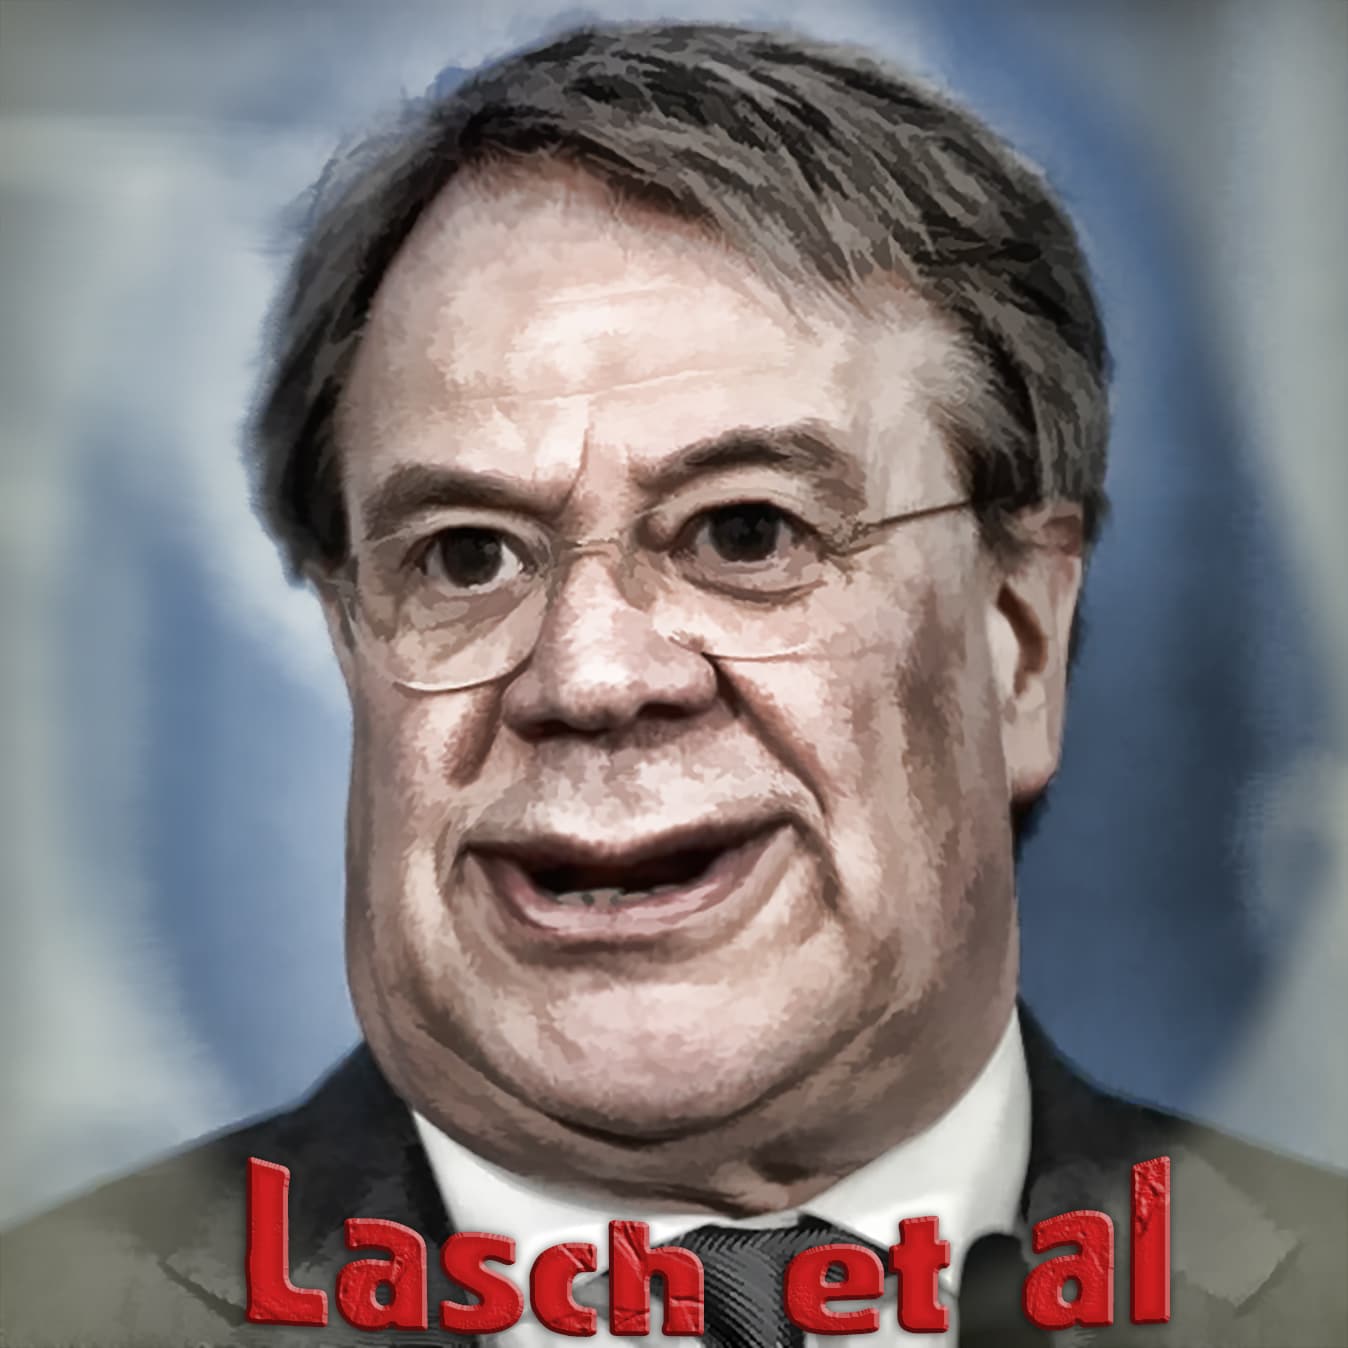 CDU-Laschet-et-al-Kanzlerkandidat-Zersetzung